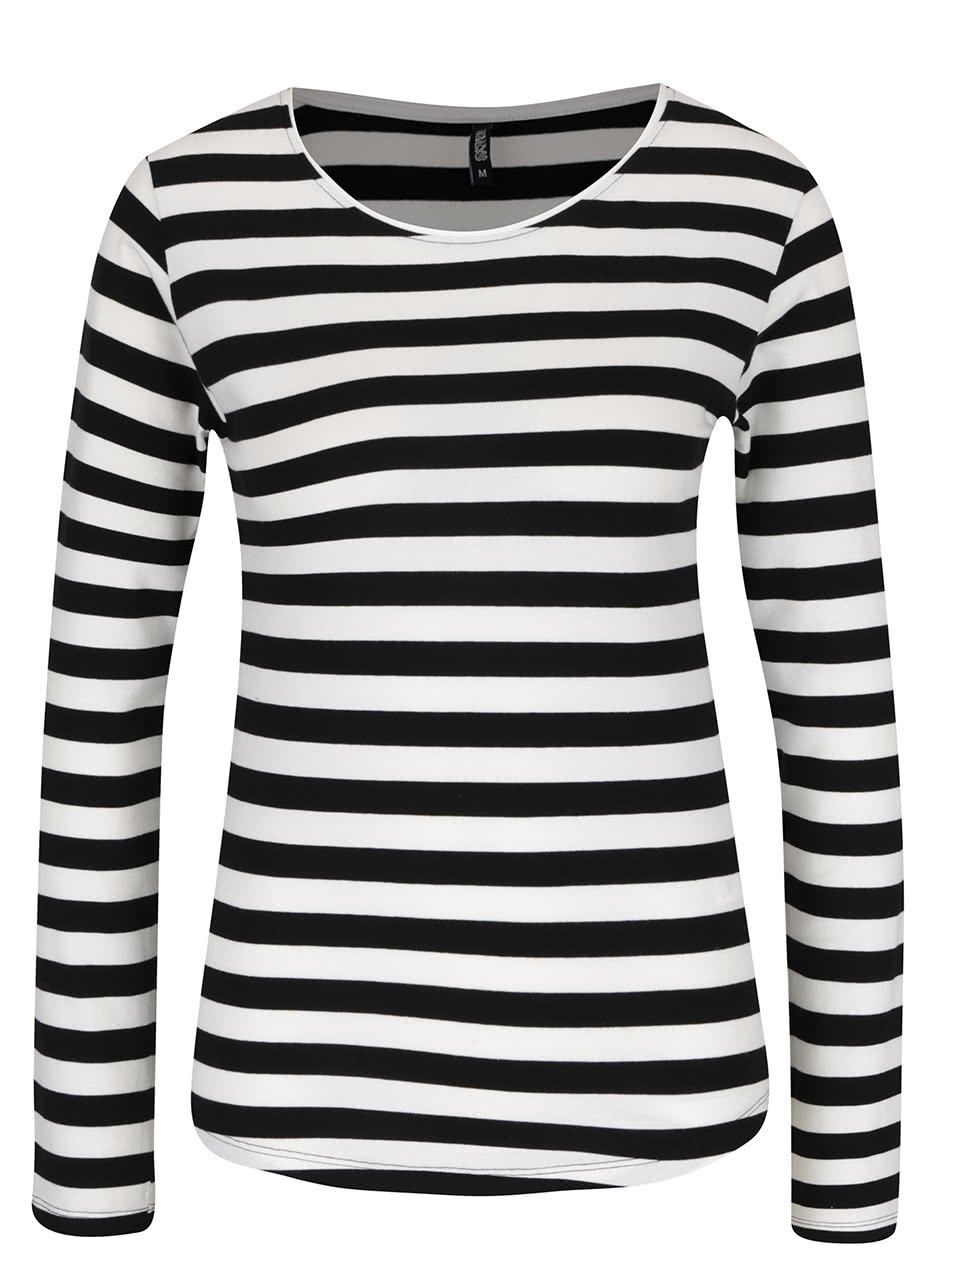 Černo-bílé pruhované tričko s dlouhým rukávem Haily´s Tina